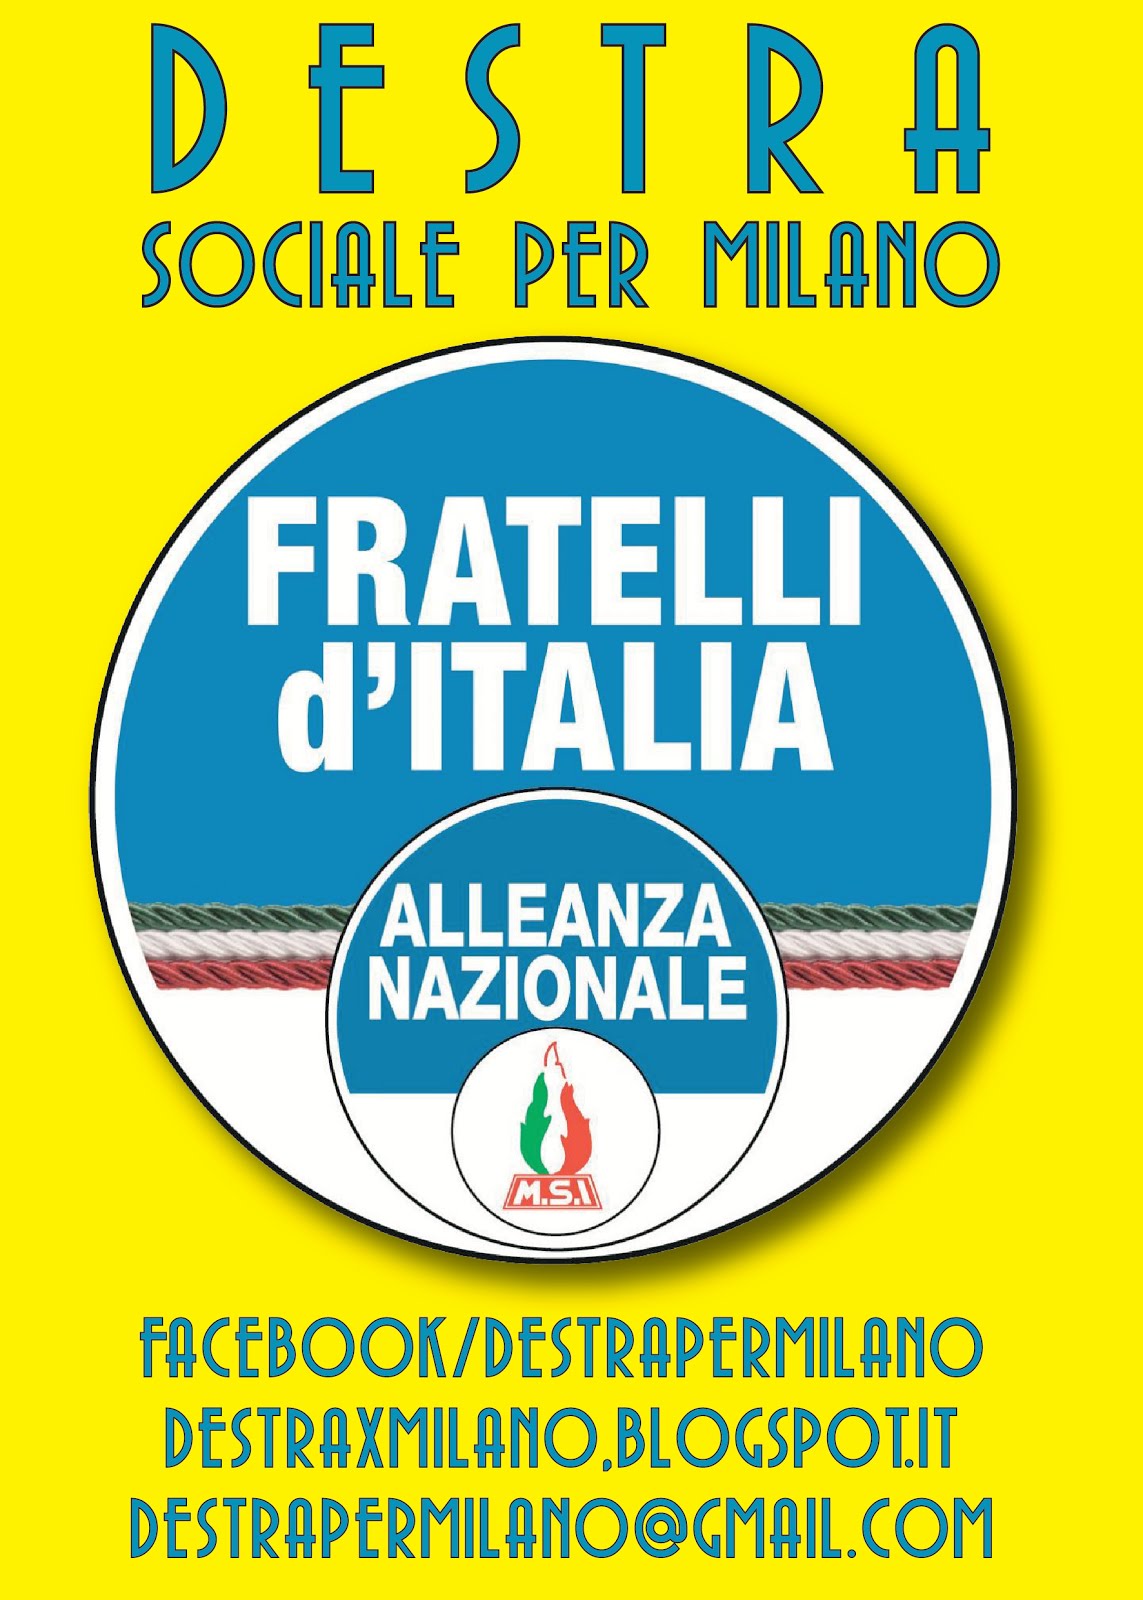 Circolo Destra Sociale per Milano